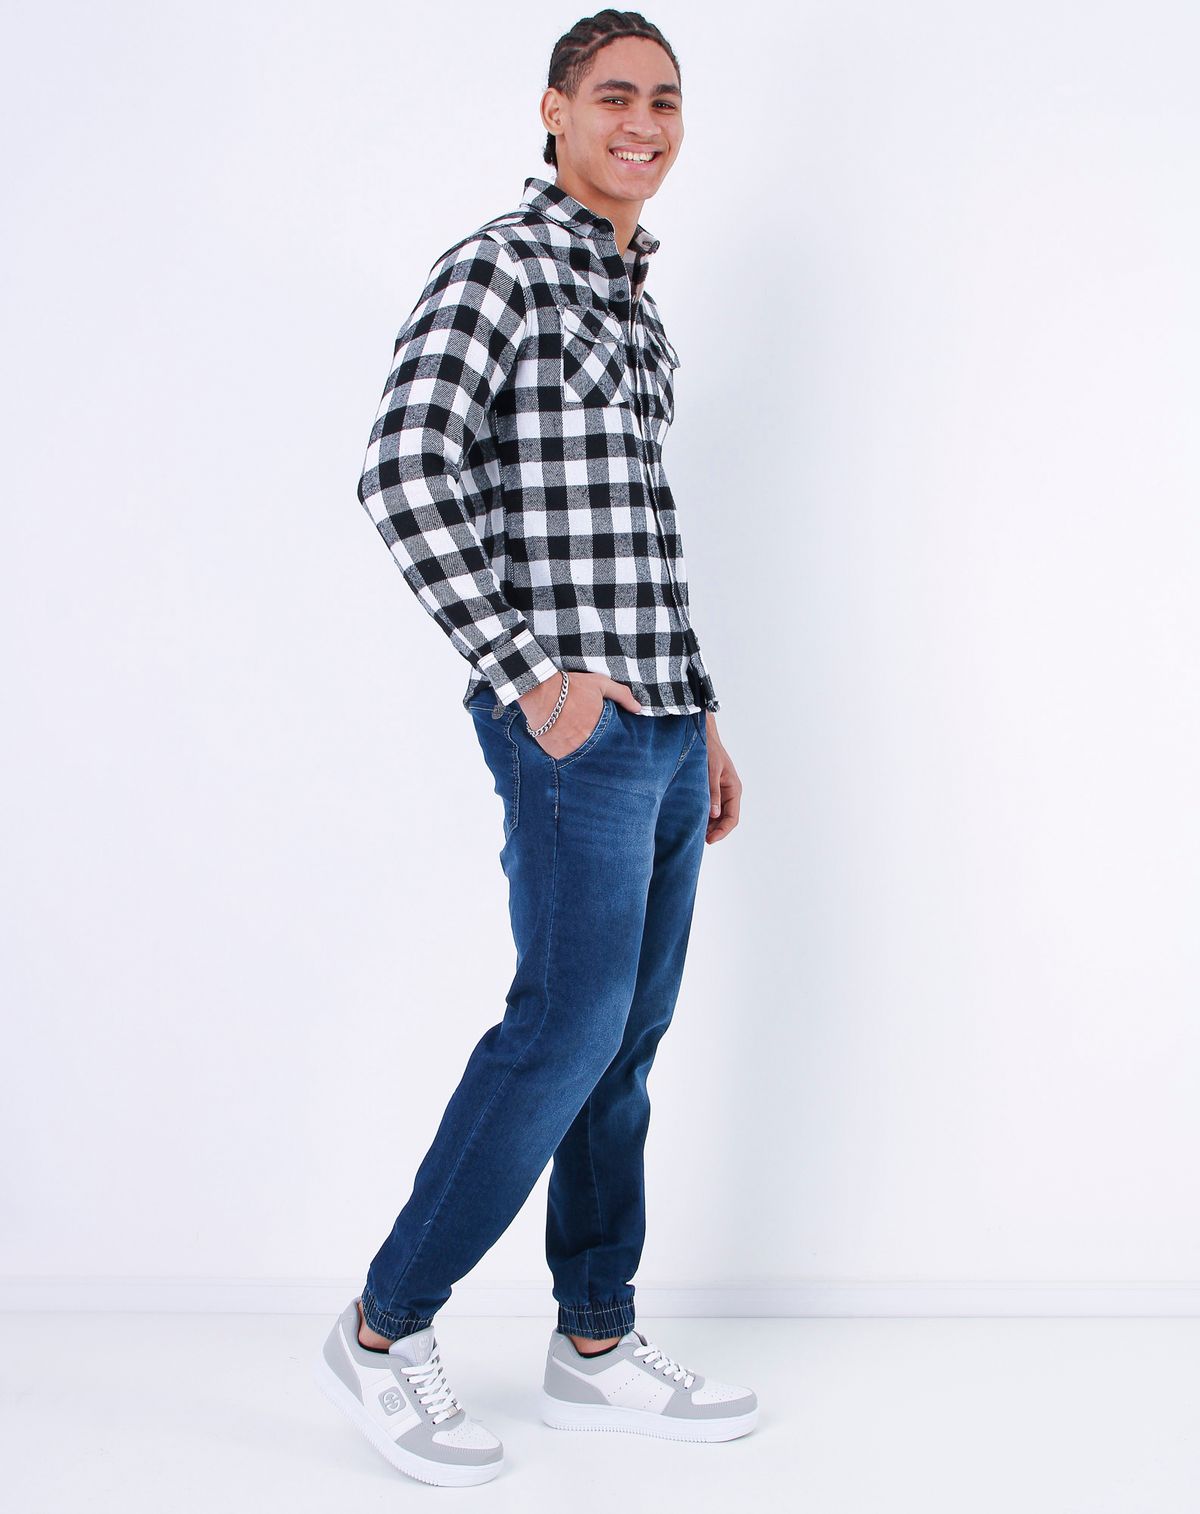 703288001-calca-jeans-jogger-masculina-com-elastico-jeans-p-936